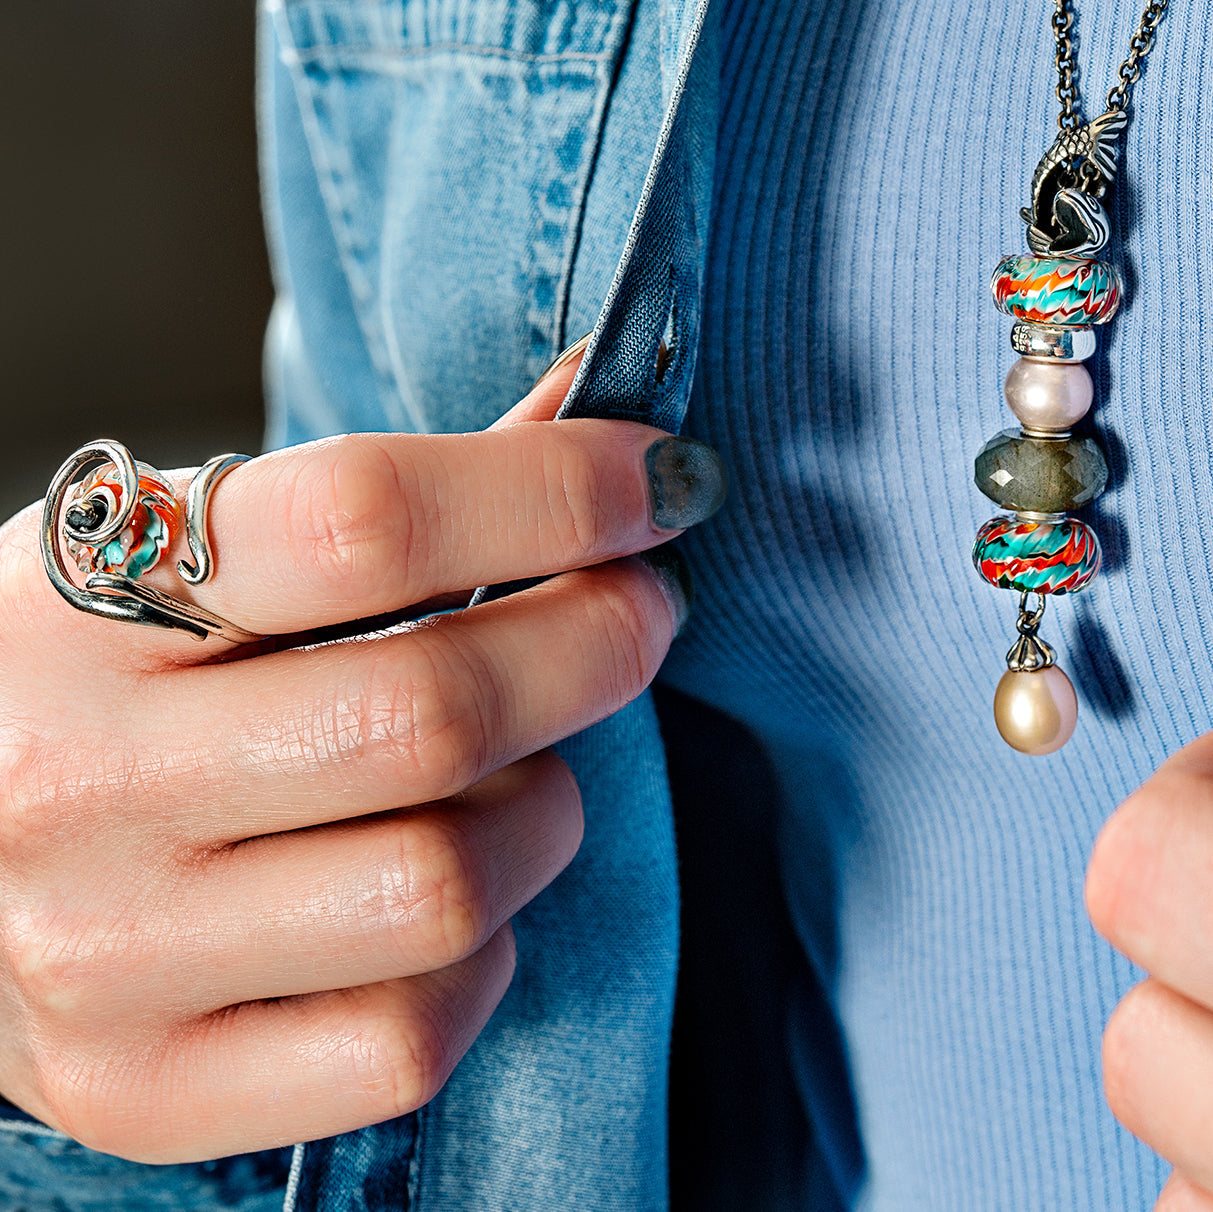 Model in blauer Kleidung trägt vom Koi-Karpfen inspirierte Beads an einer Fantasy Kette mit Perlen und Labradorit